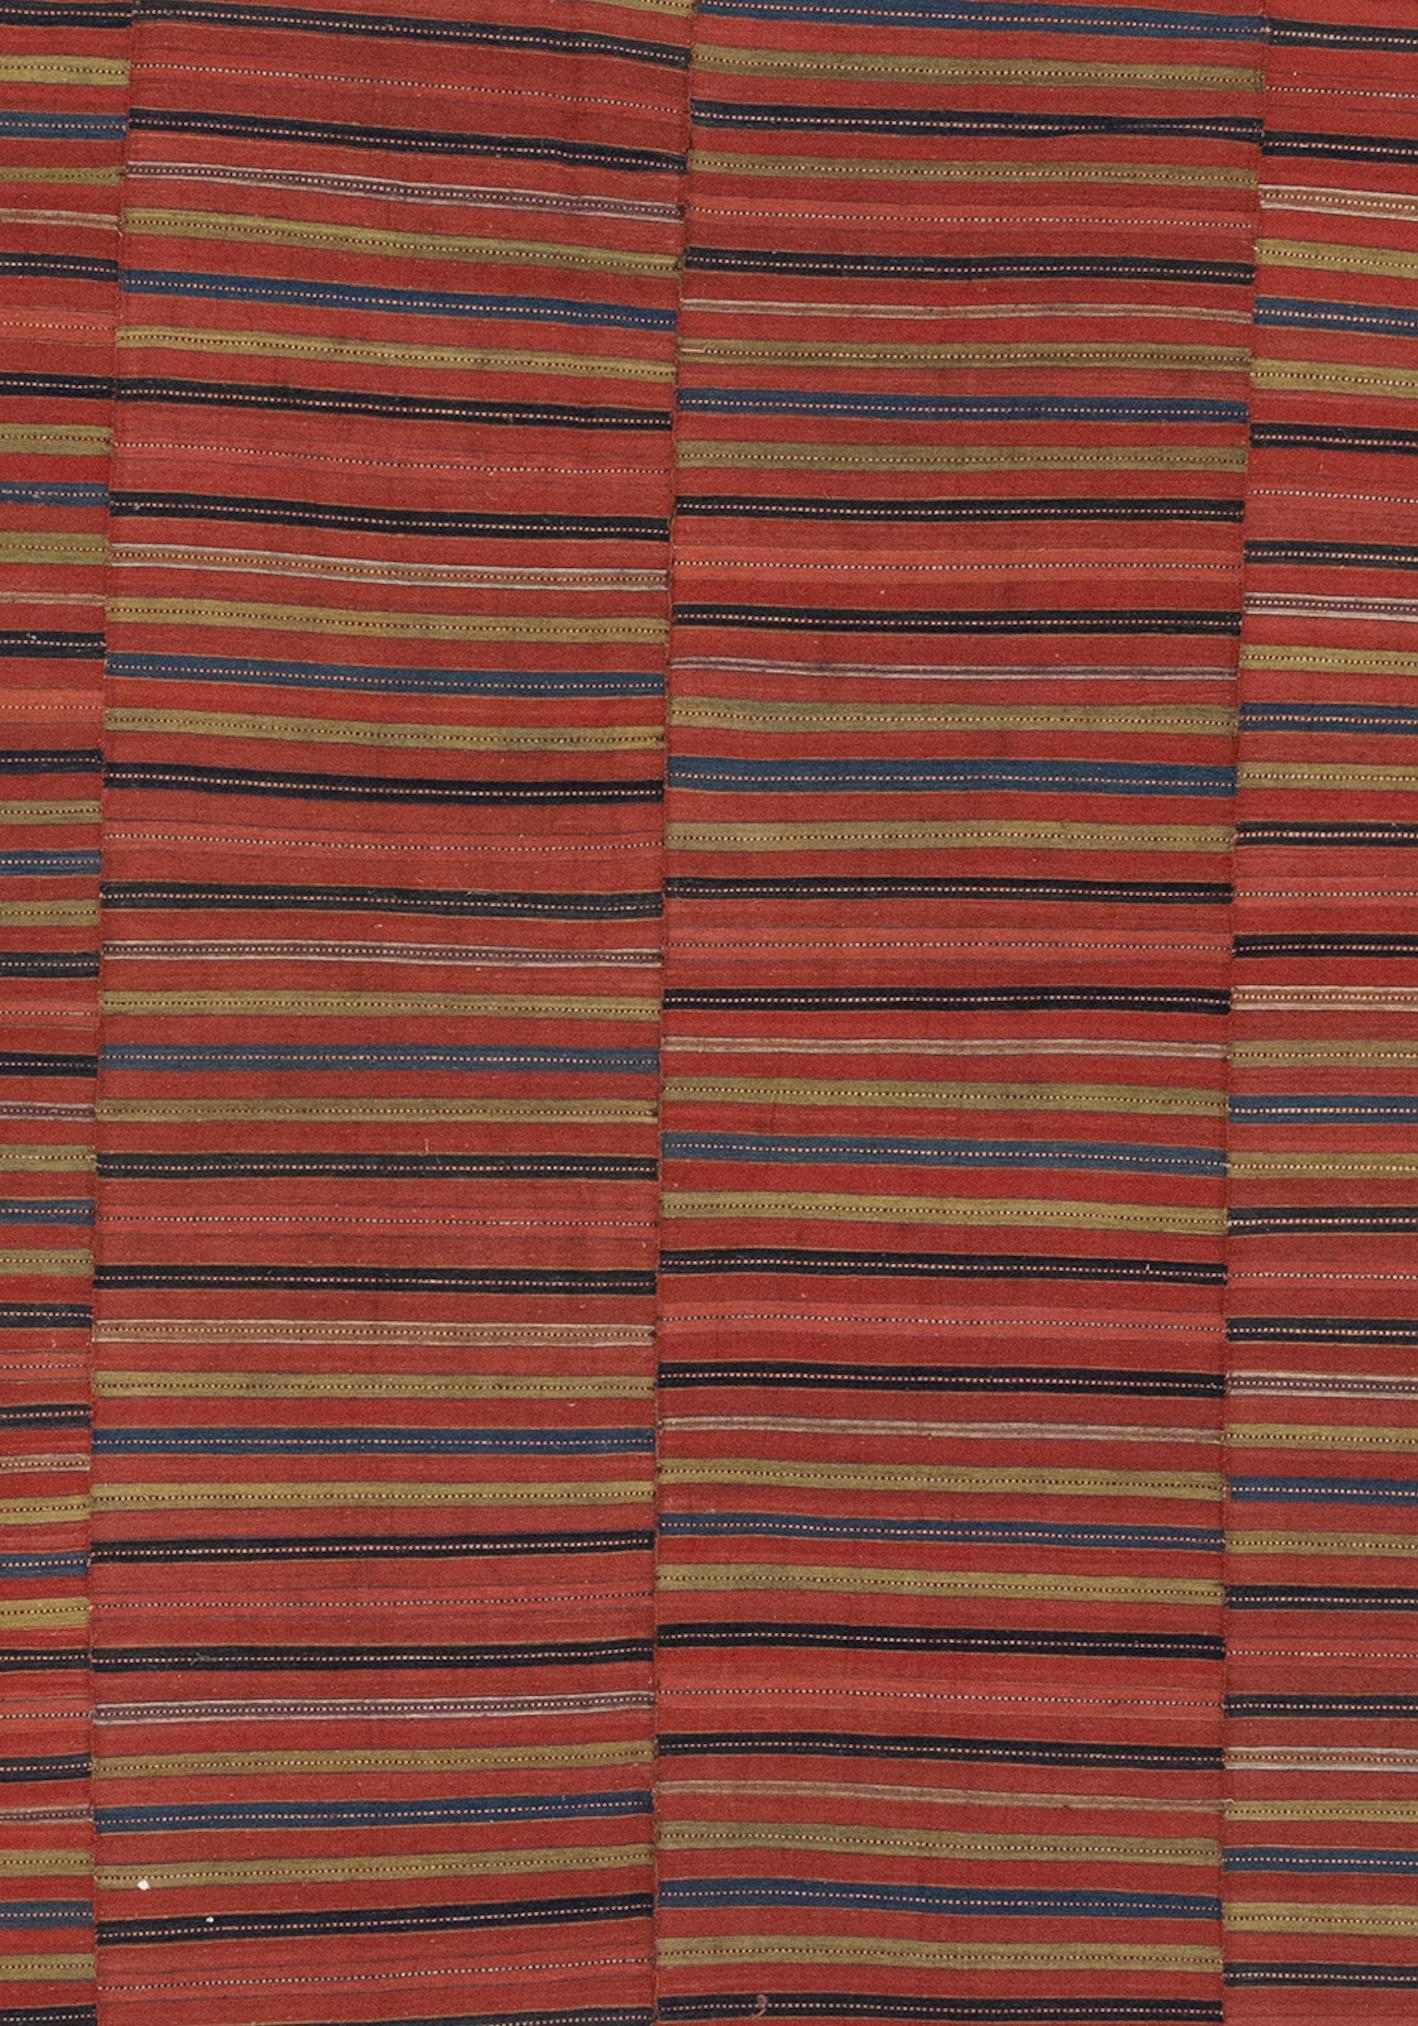 Dies ist ein Vintage-Kilim-Teppich um 1900. Dieser Teppich ist aufgrund der Kompliziertheit von Muster und Farbe wunderschön. Sehr feinmaschig.

Kelims sind florfreie Textilien, die häufig mit Hilfe von Flachwebtechniken hergestellt werden. Das Wort